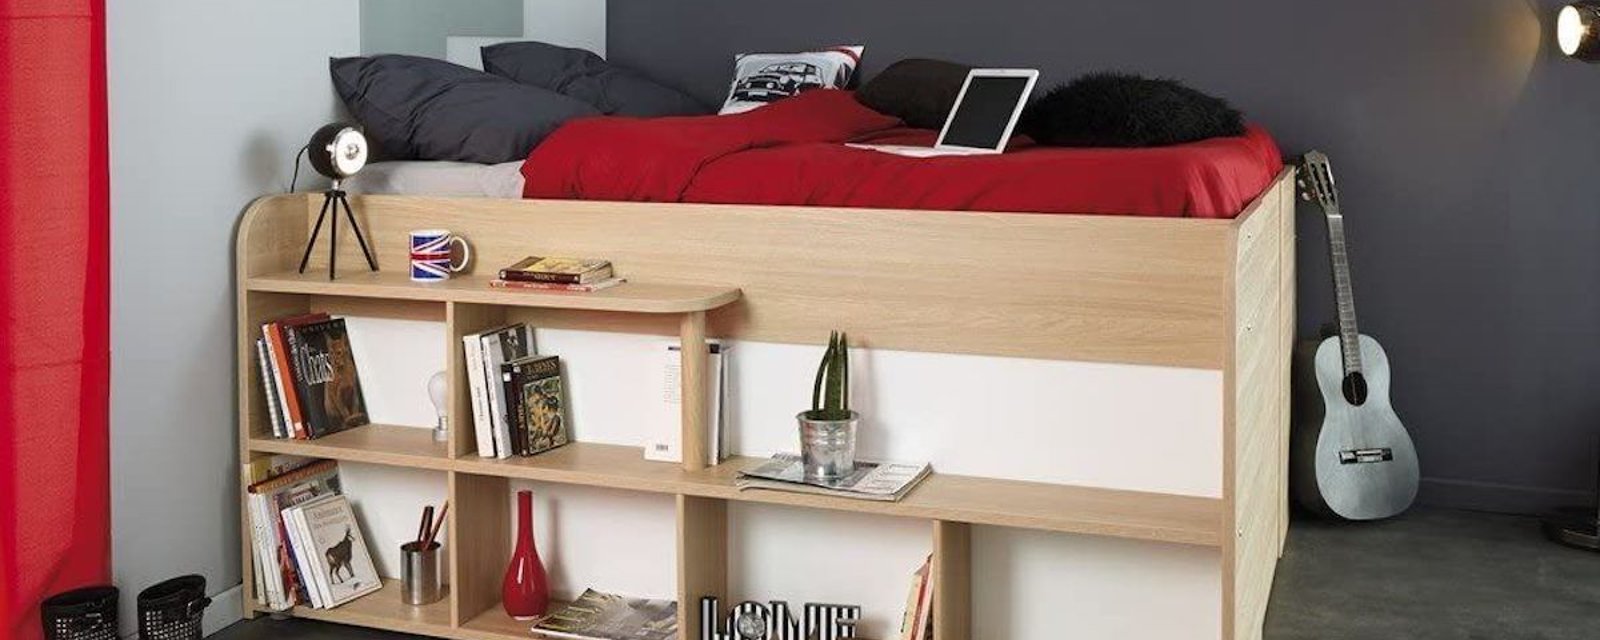 Voici le lit parfait pour les amoureux de l’ordre, surtout dans un petit espace